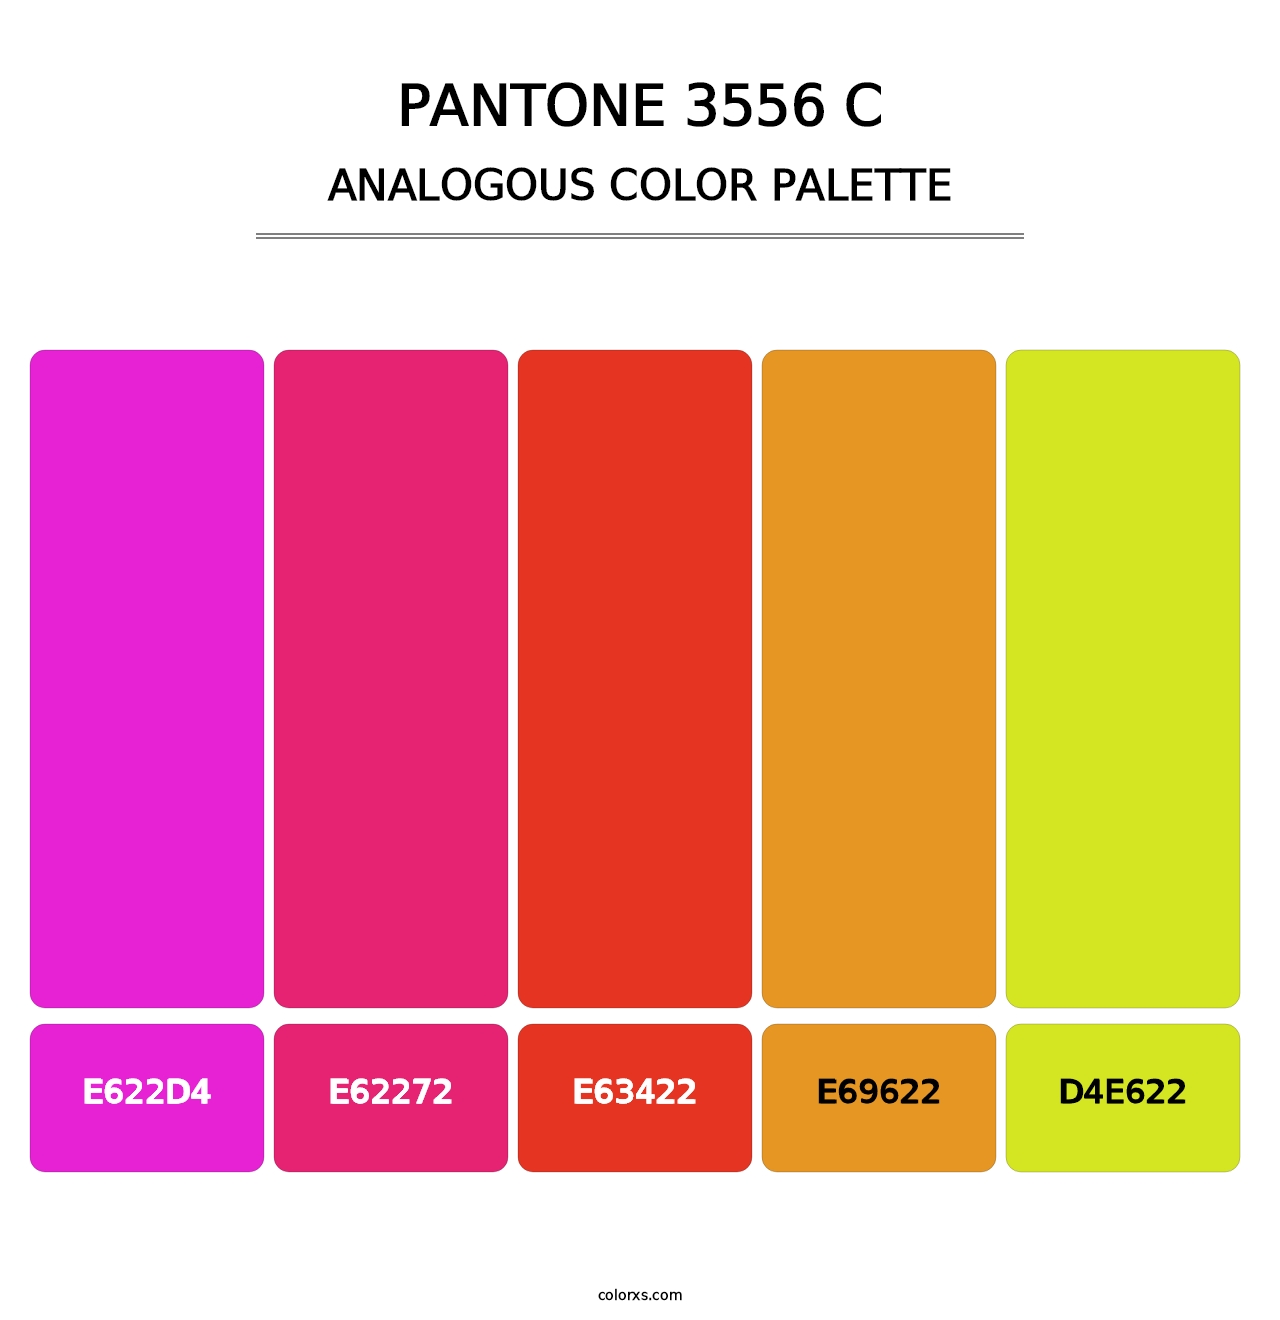 PANTONE 3556 C - Analogous Color Palette